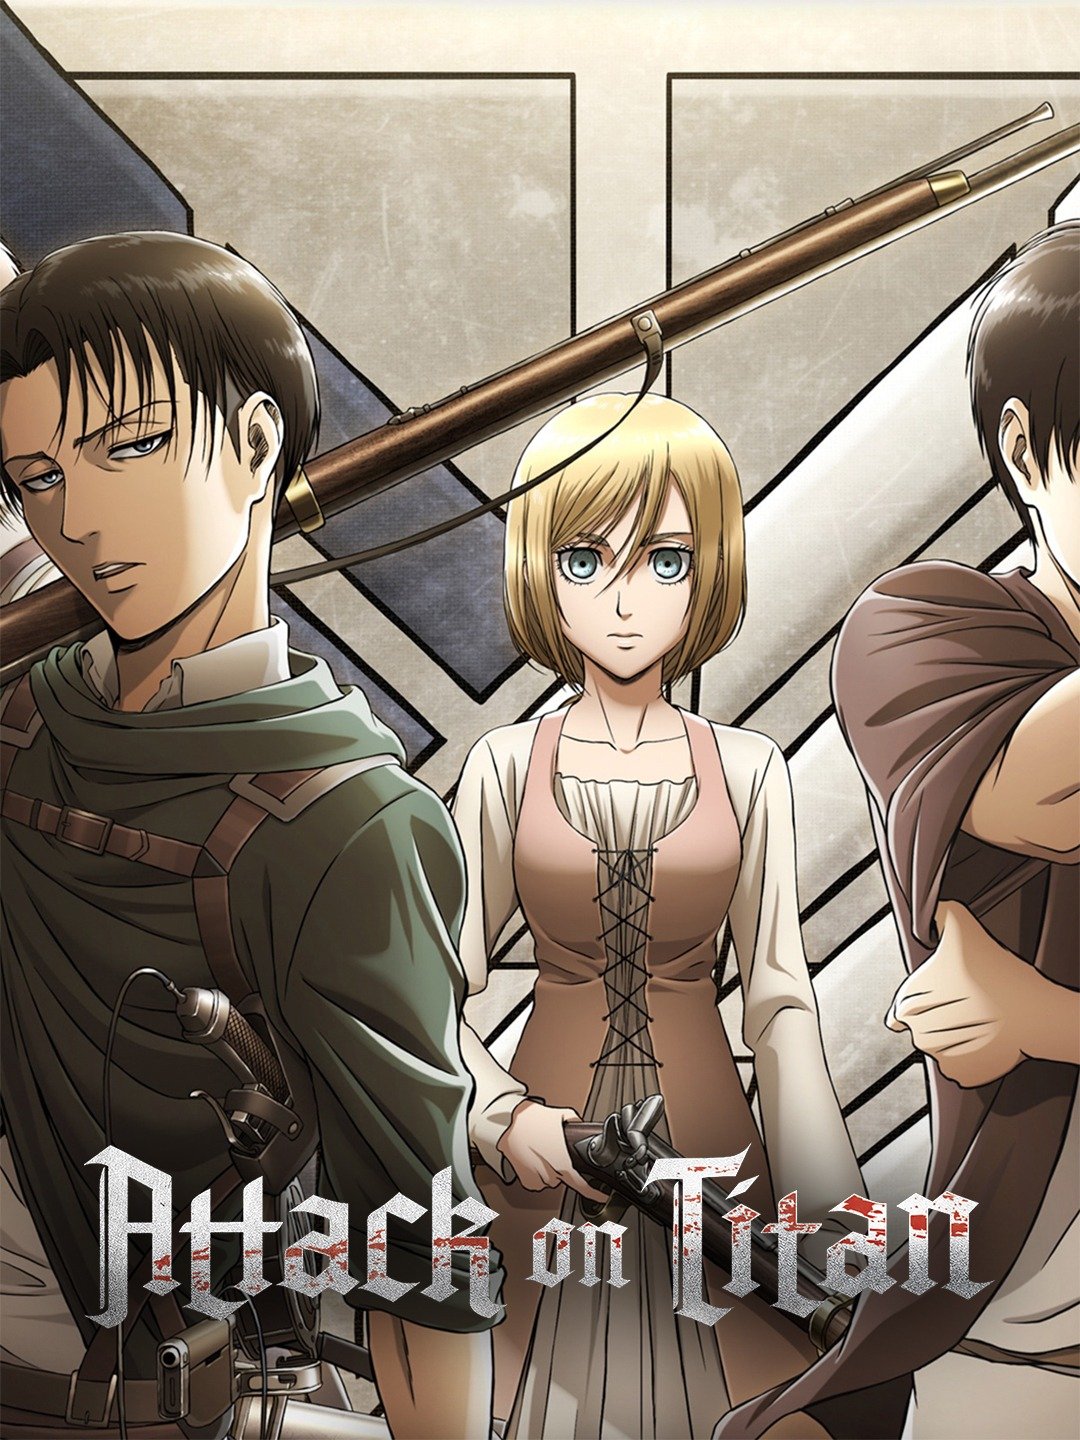 [Anime Series] Attack on Titan (Season 1)